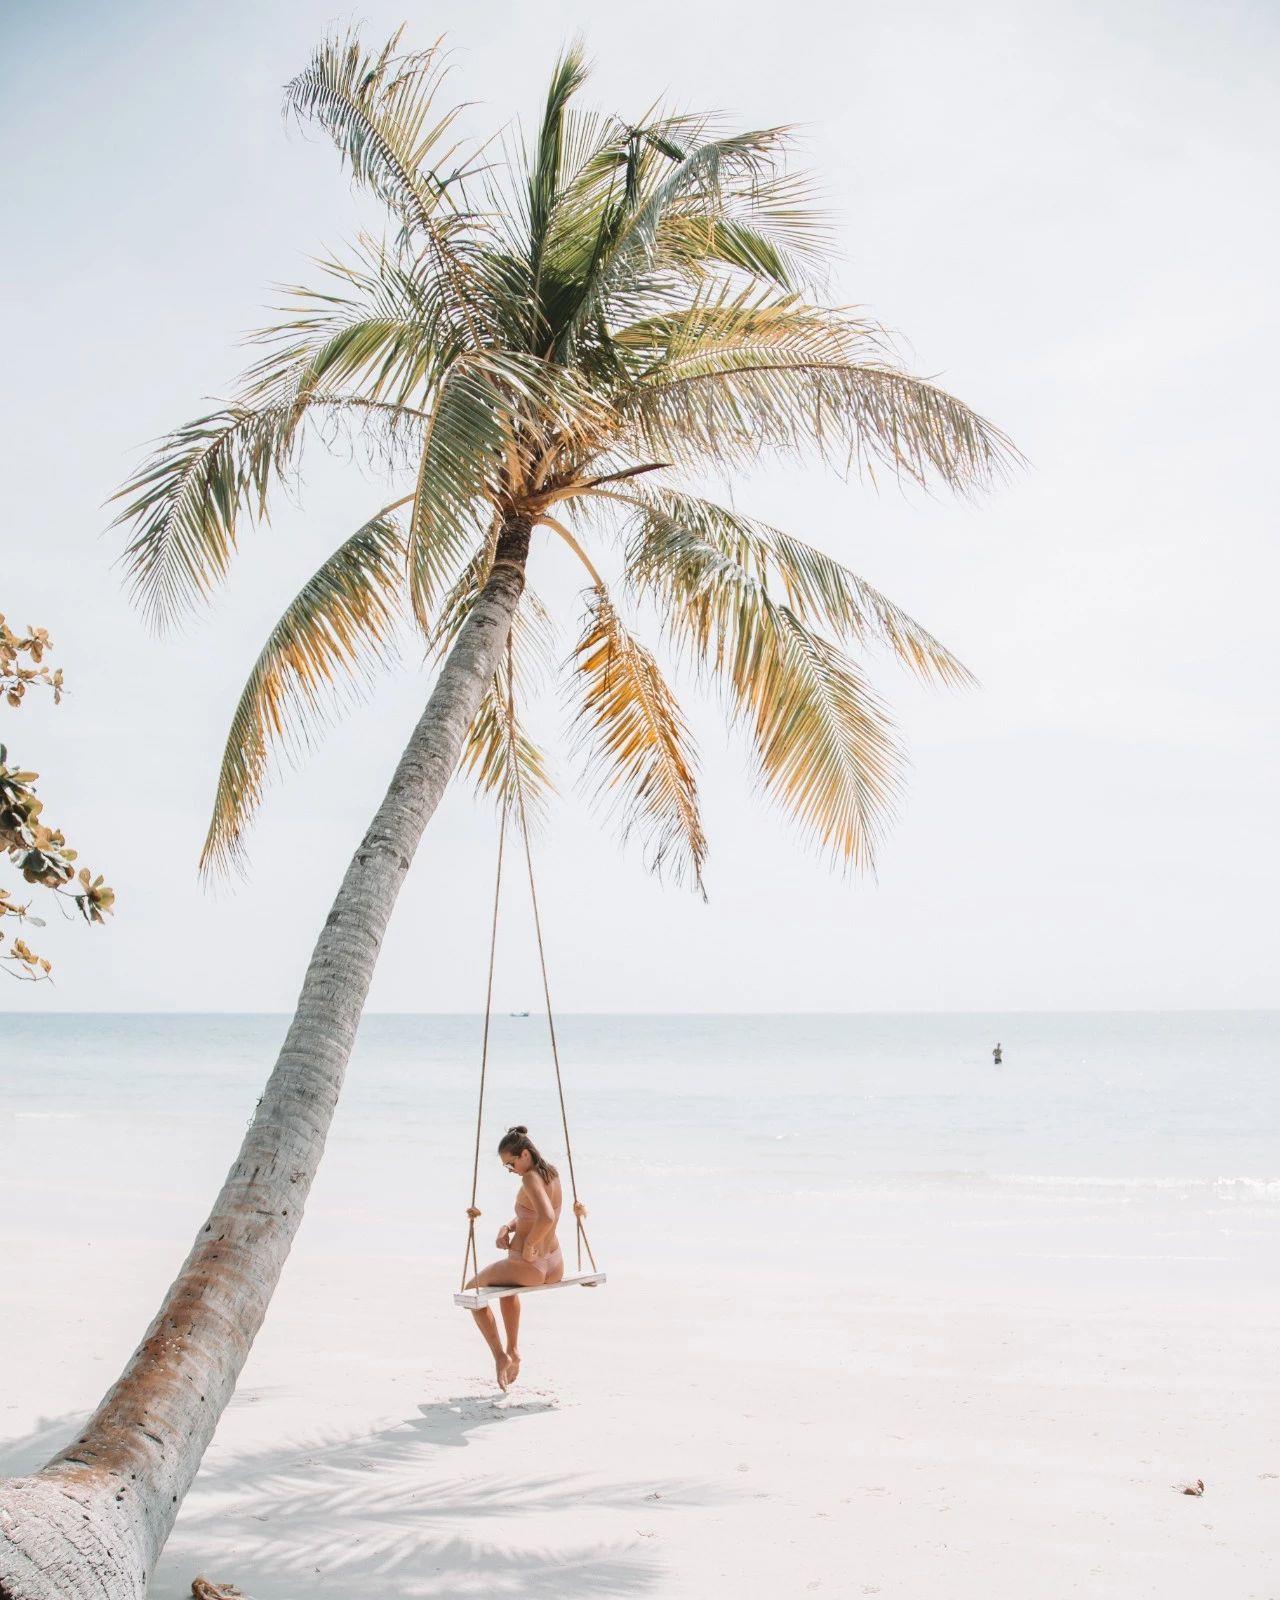 Du lịch ở đâu mùa hè này? – Bãi Sao Phú Quốc, bãi biển đẹp nhất ở miền nam Việt Nam